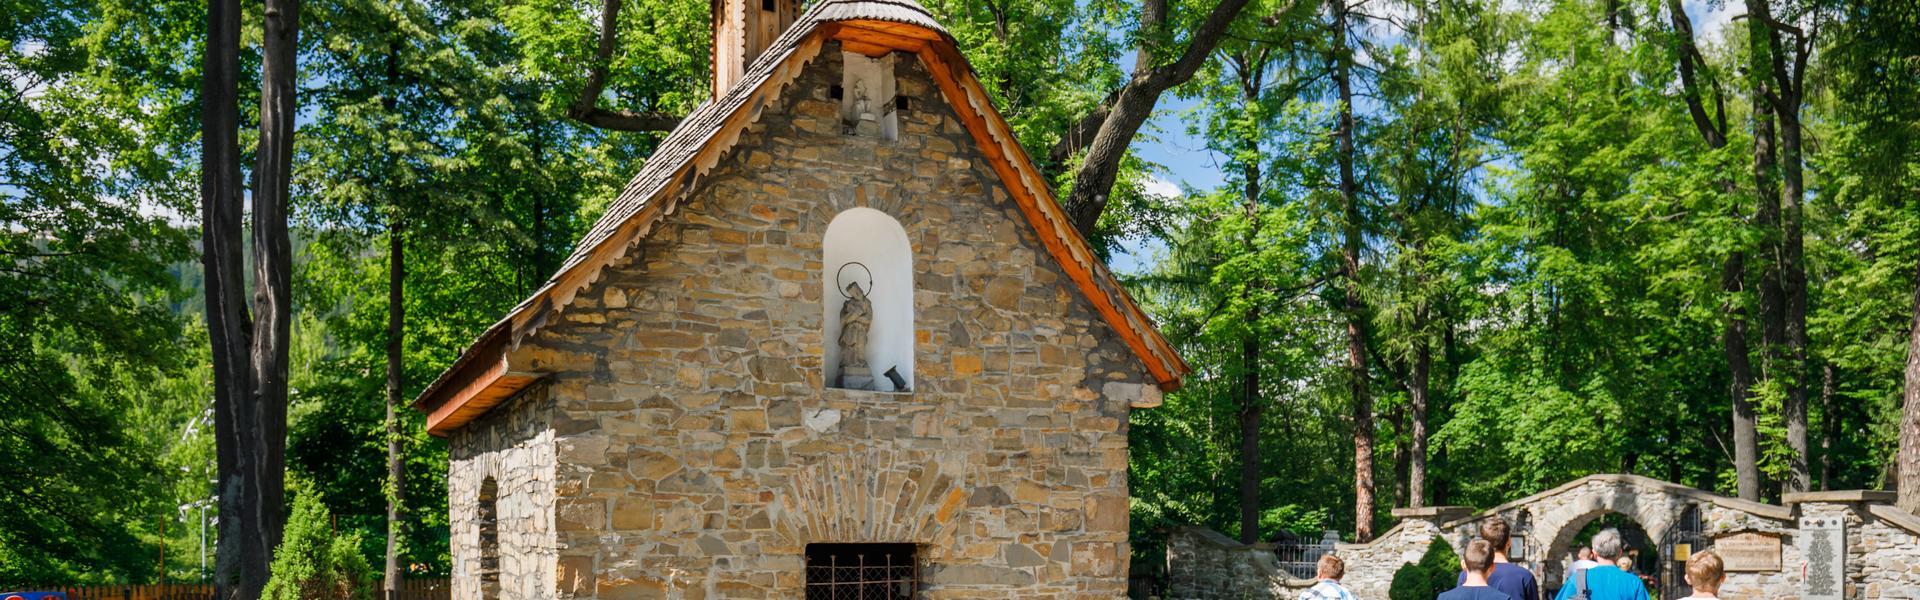 Church in Zakopane